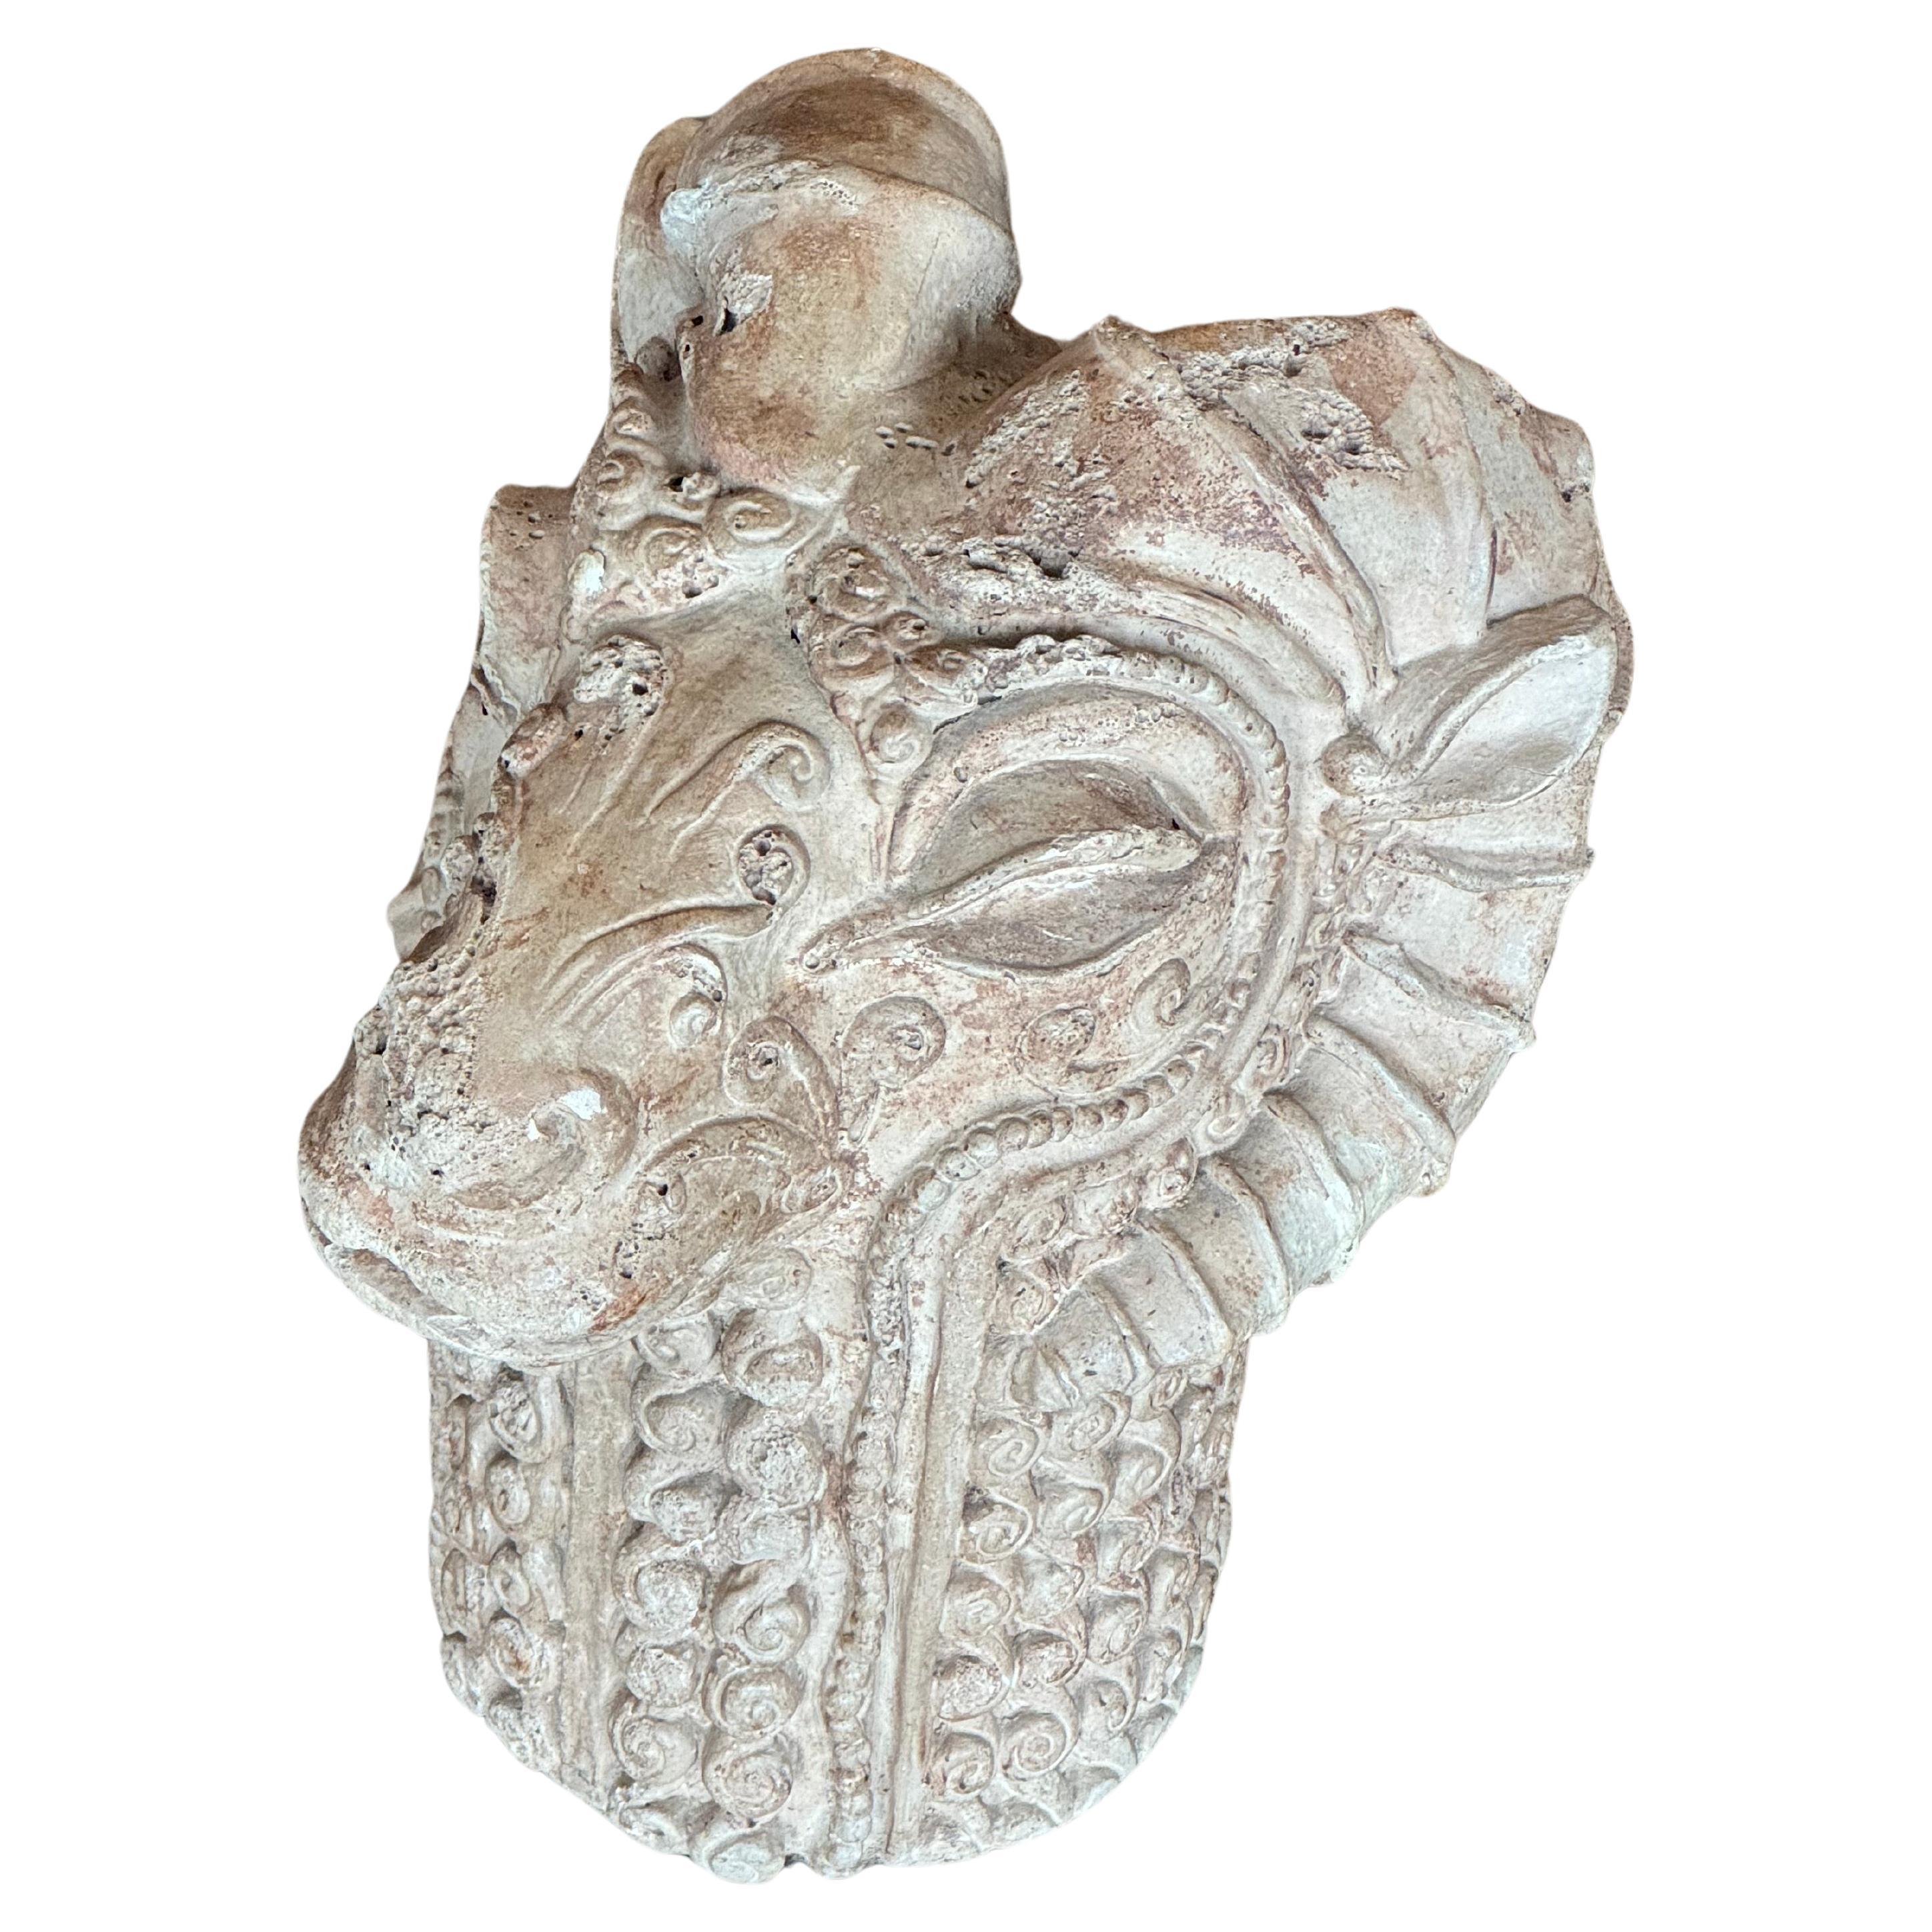 Cette figurine de tête de bélier du milieu du siècle est un accent décoratif idéal et sert également de serre-livres fonctionnel. Fabriqué avec des embellissements méticuleusement sculptés à la main, il arbore une charmante patine naturelle et une